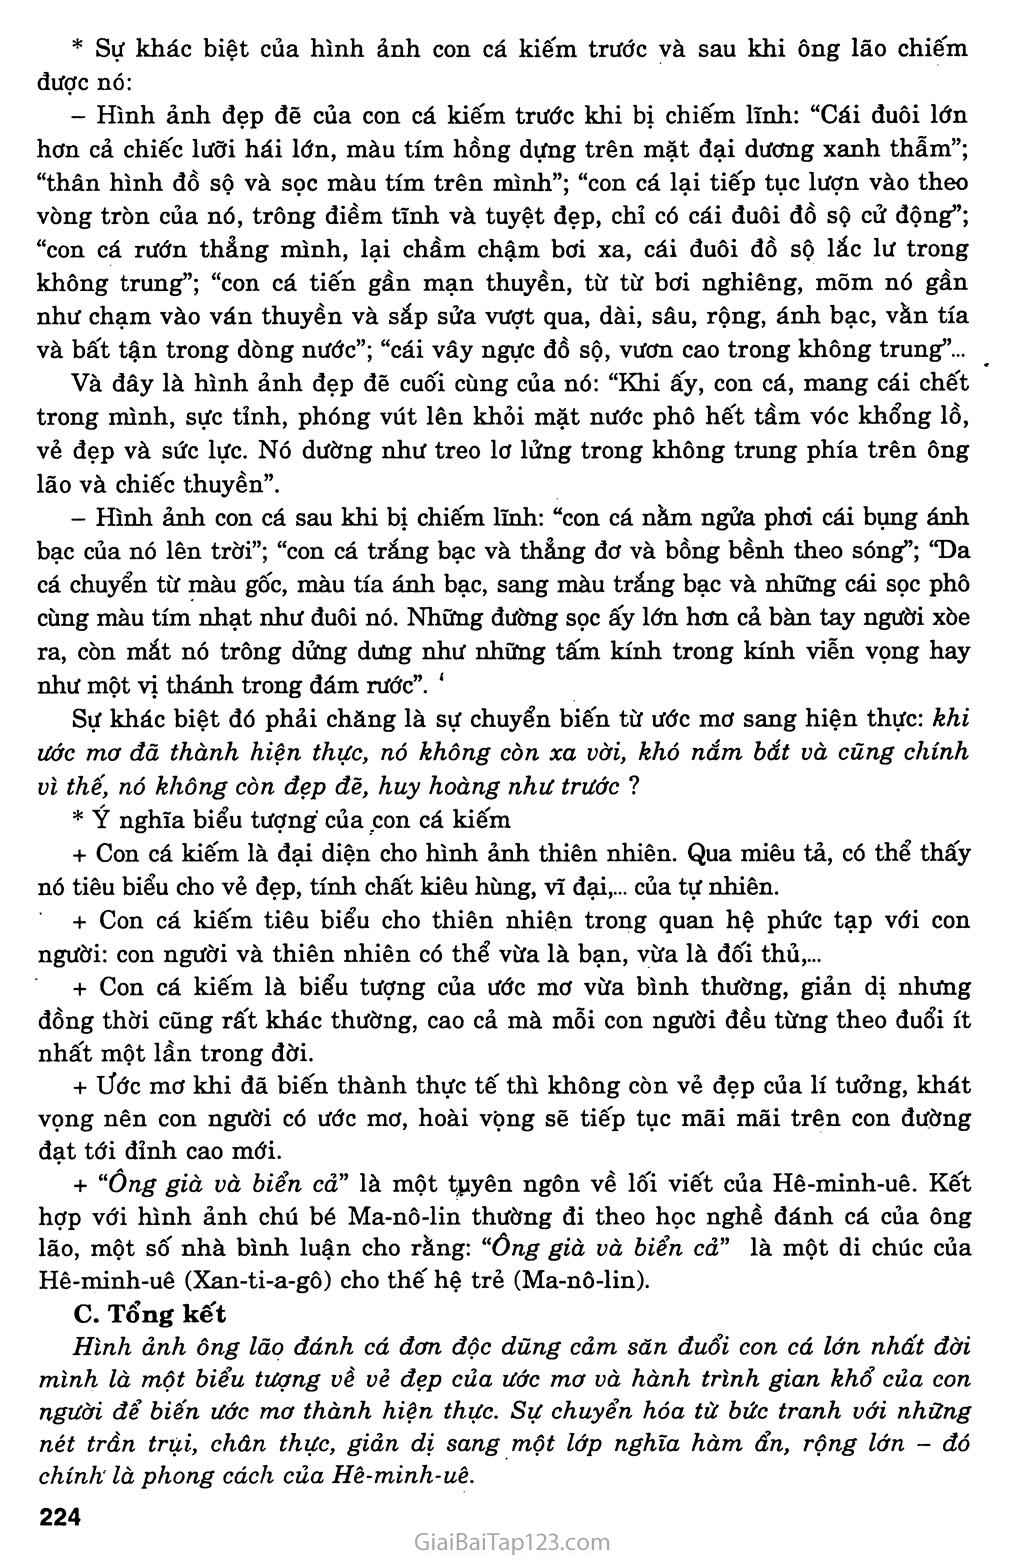 Ông già và biển cả (Hê - minh - uê, 1952) trang 4